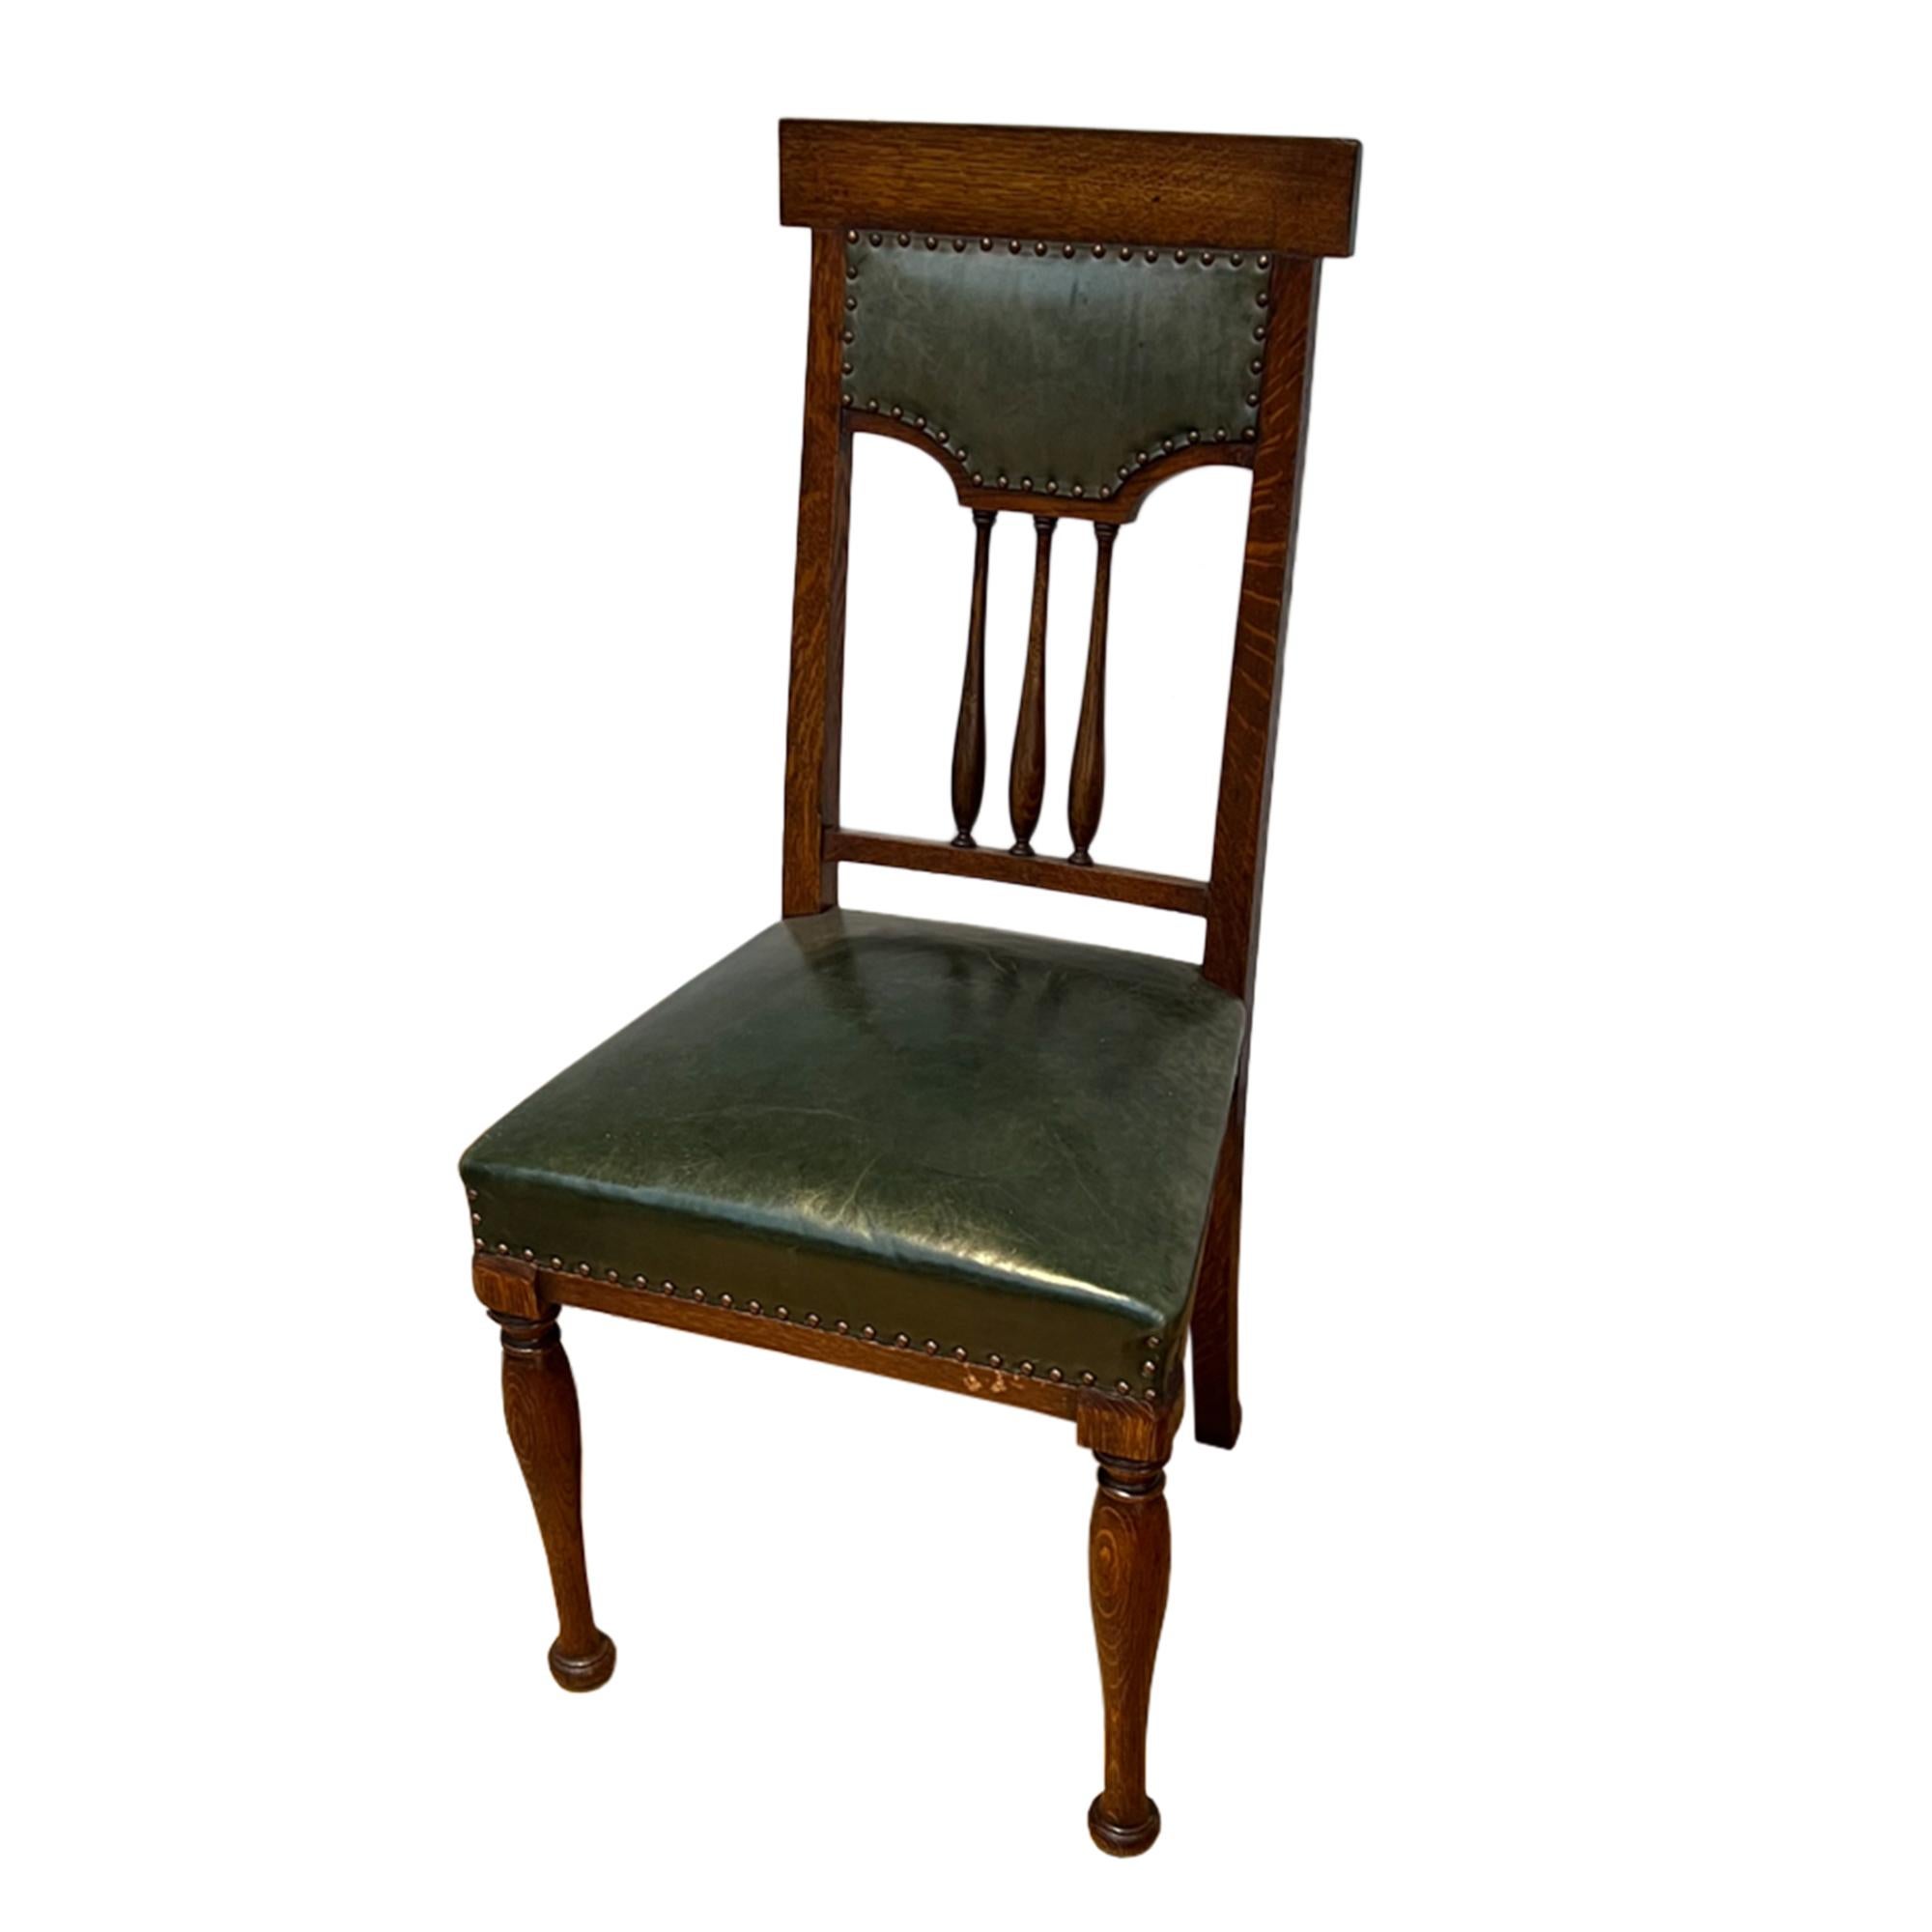 Cet ensemble de chaises de salle à manger est fabriqué en chêne et en cuir avec des clous en laiton.

Fabriqué dans les années 1910 - un bel exemple d'antiquités britanniques dans le style Arts and Crafts. 